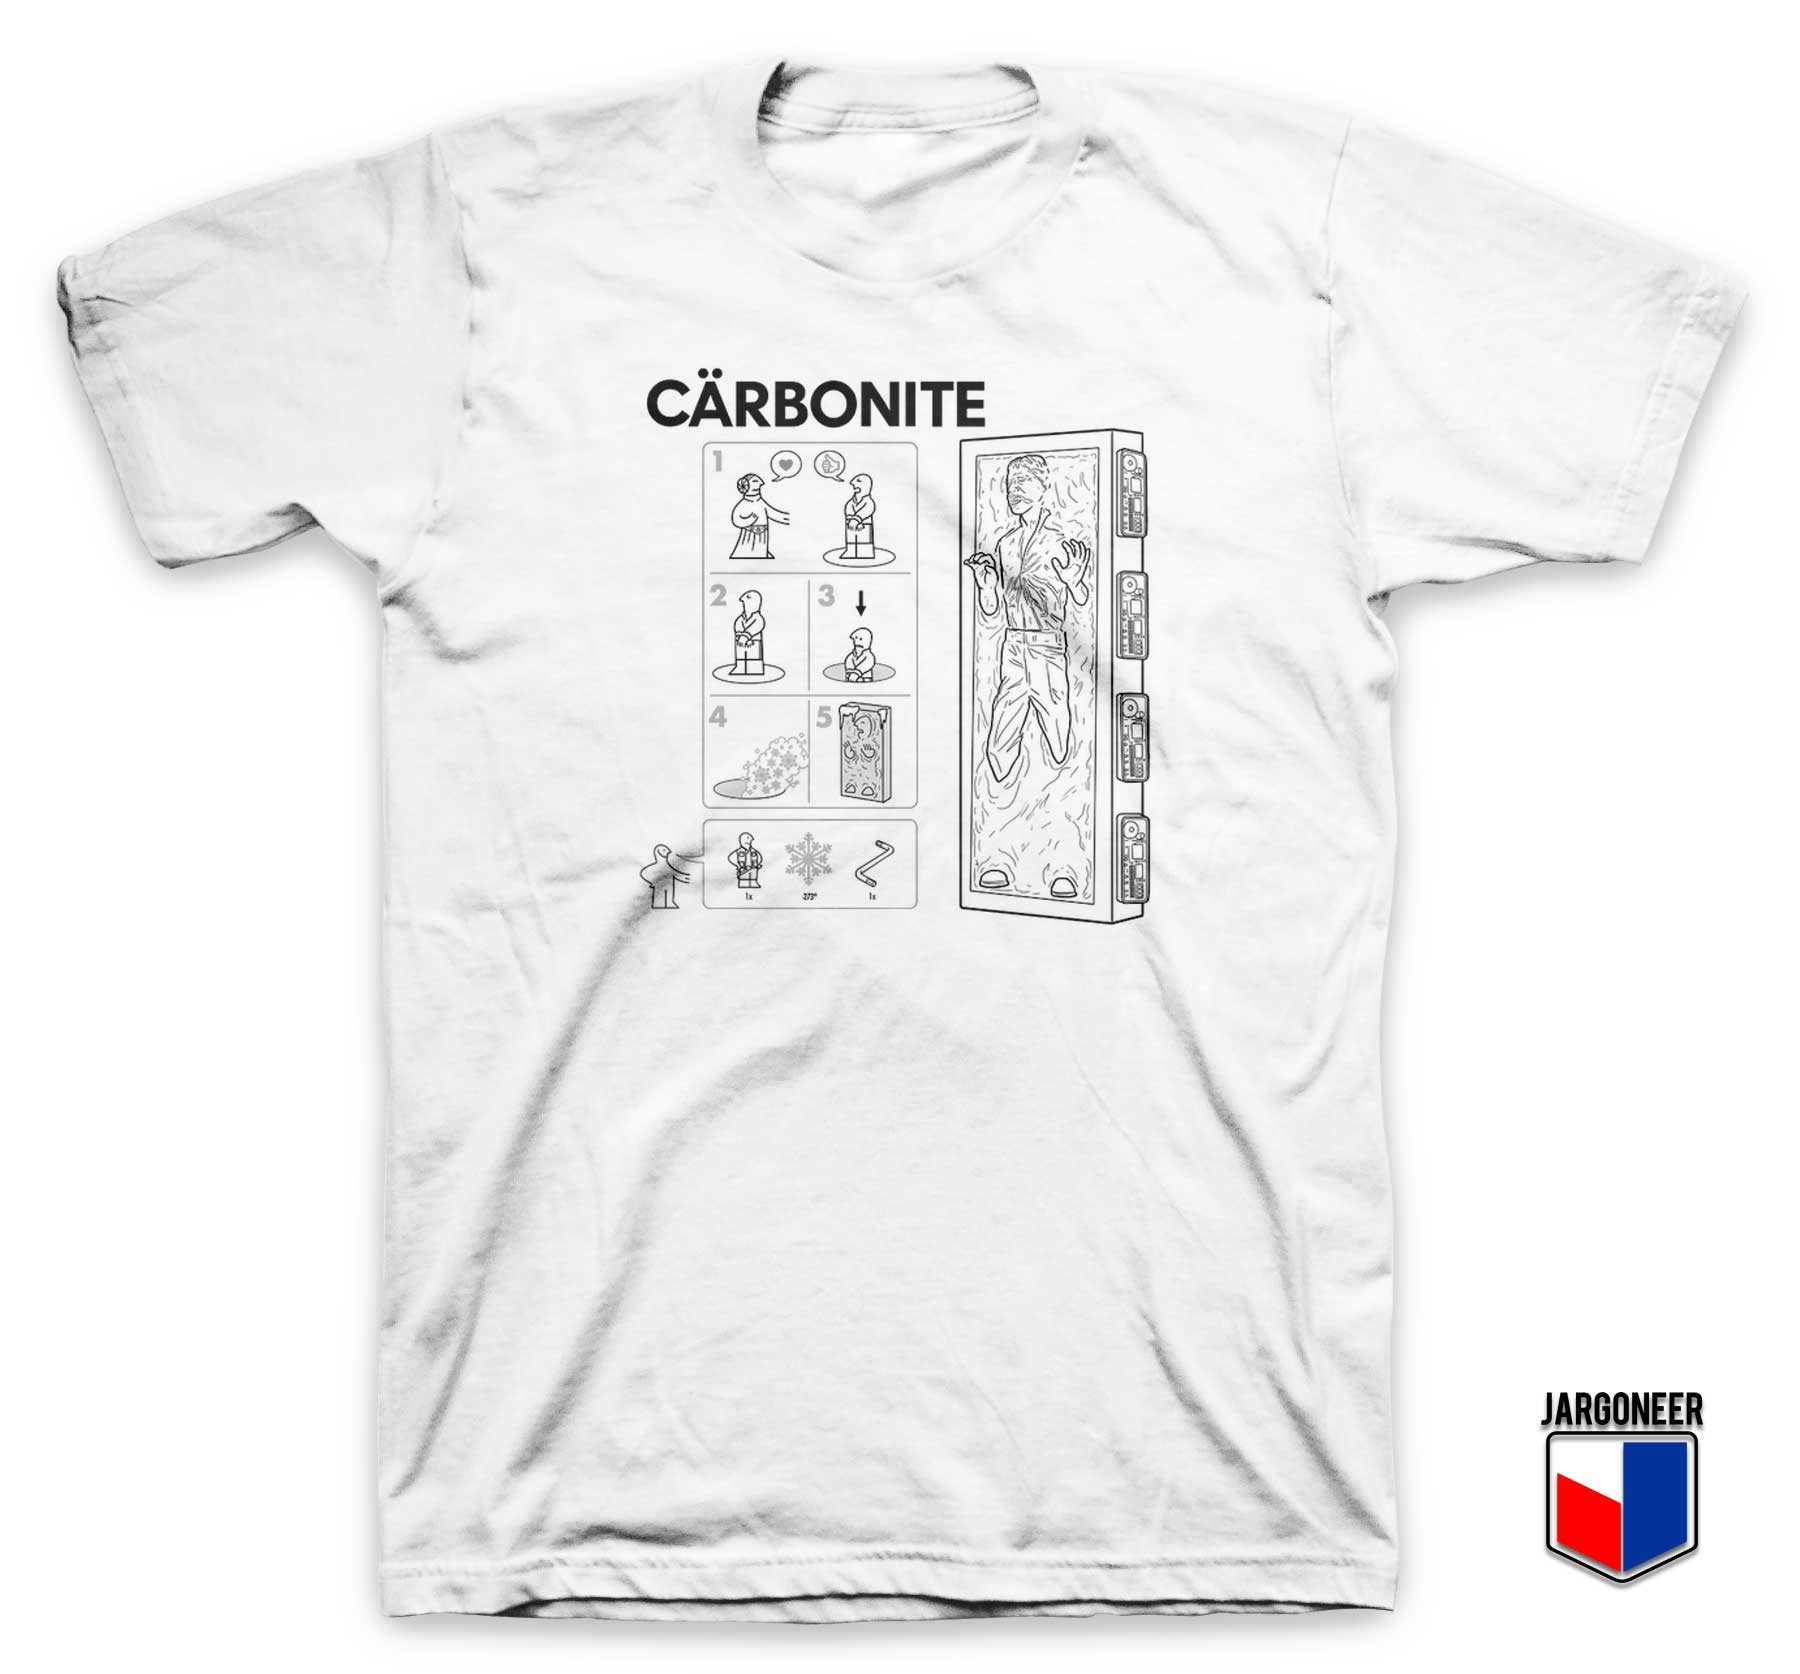 Carbonite Instructions T Shirt - Shop Unique Graphic Cool Shirt Designs